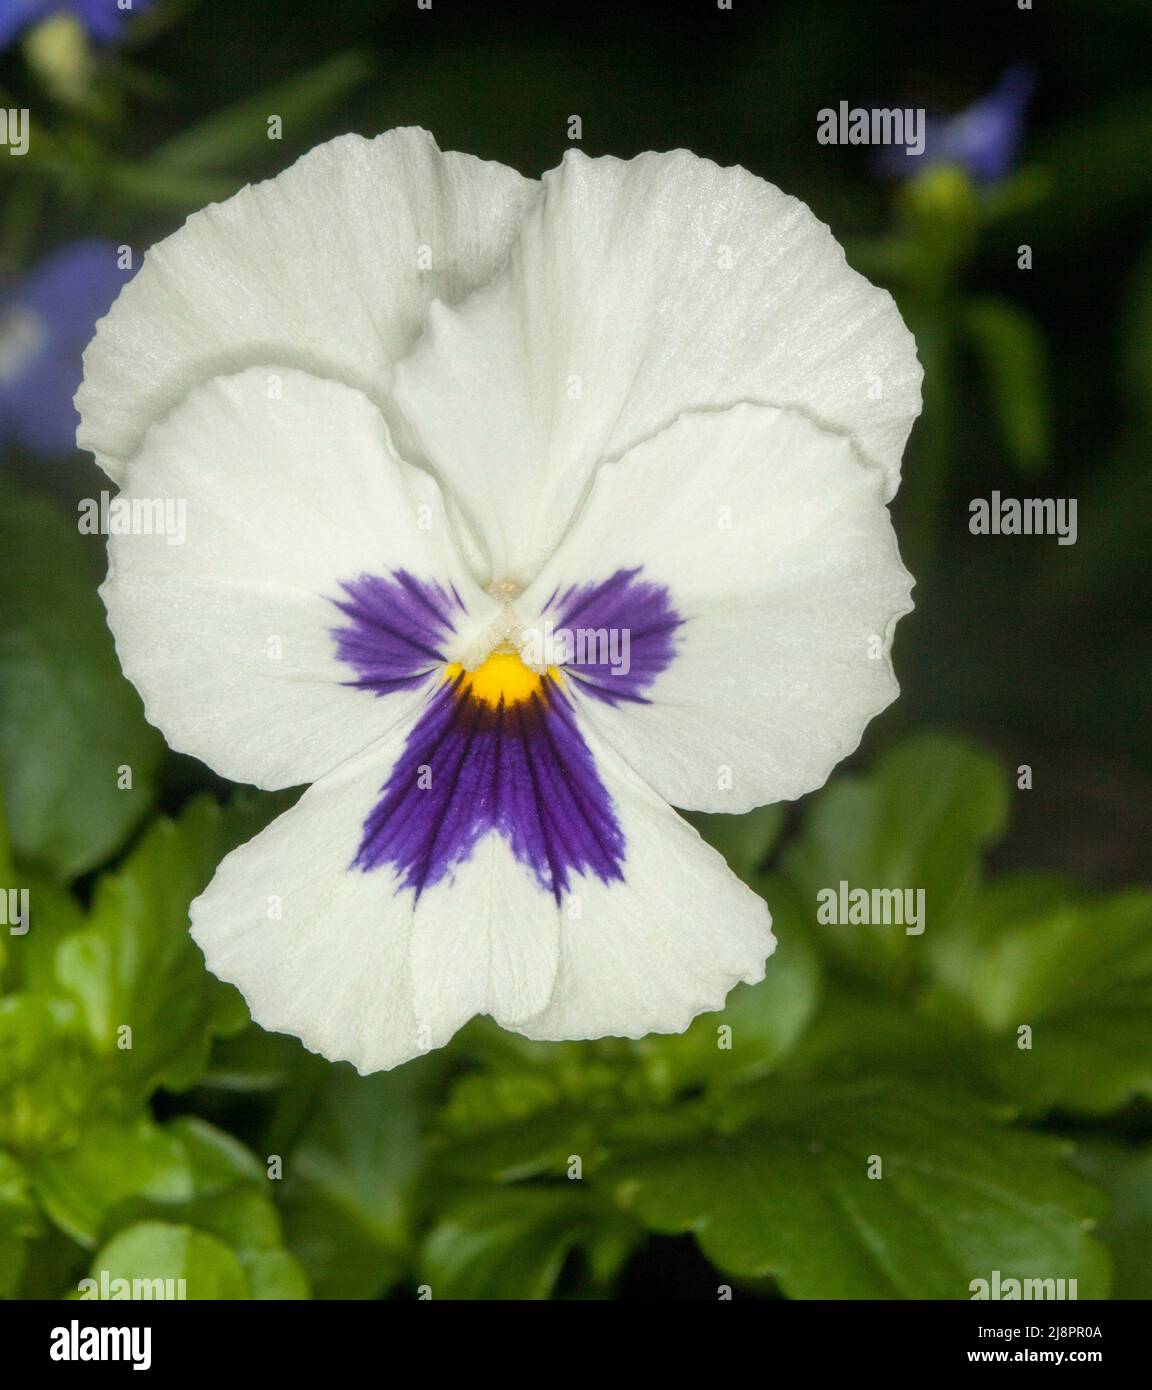 Belle fleur blanche de pansy / alto avec un peu de pourpre sur les pétales, une plante de jardin annuelle, sur fond de feuilles vertes brillantes Banque D'Images